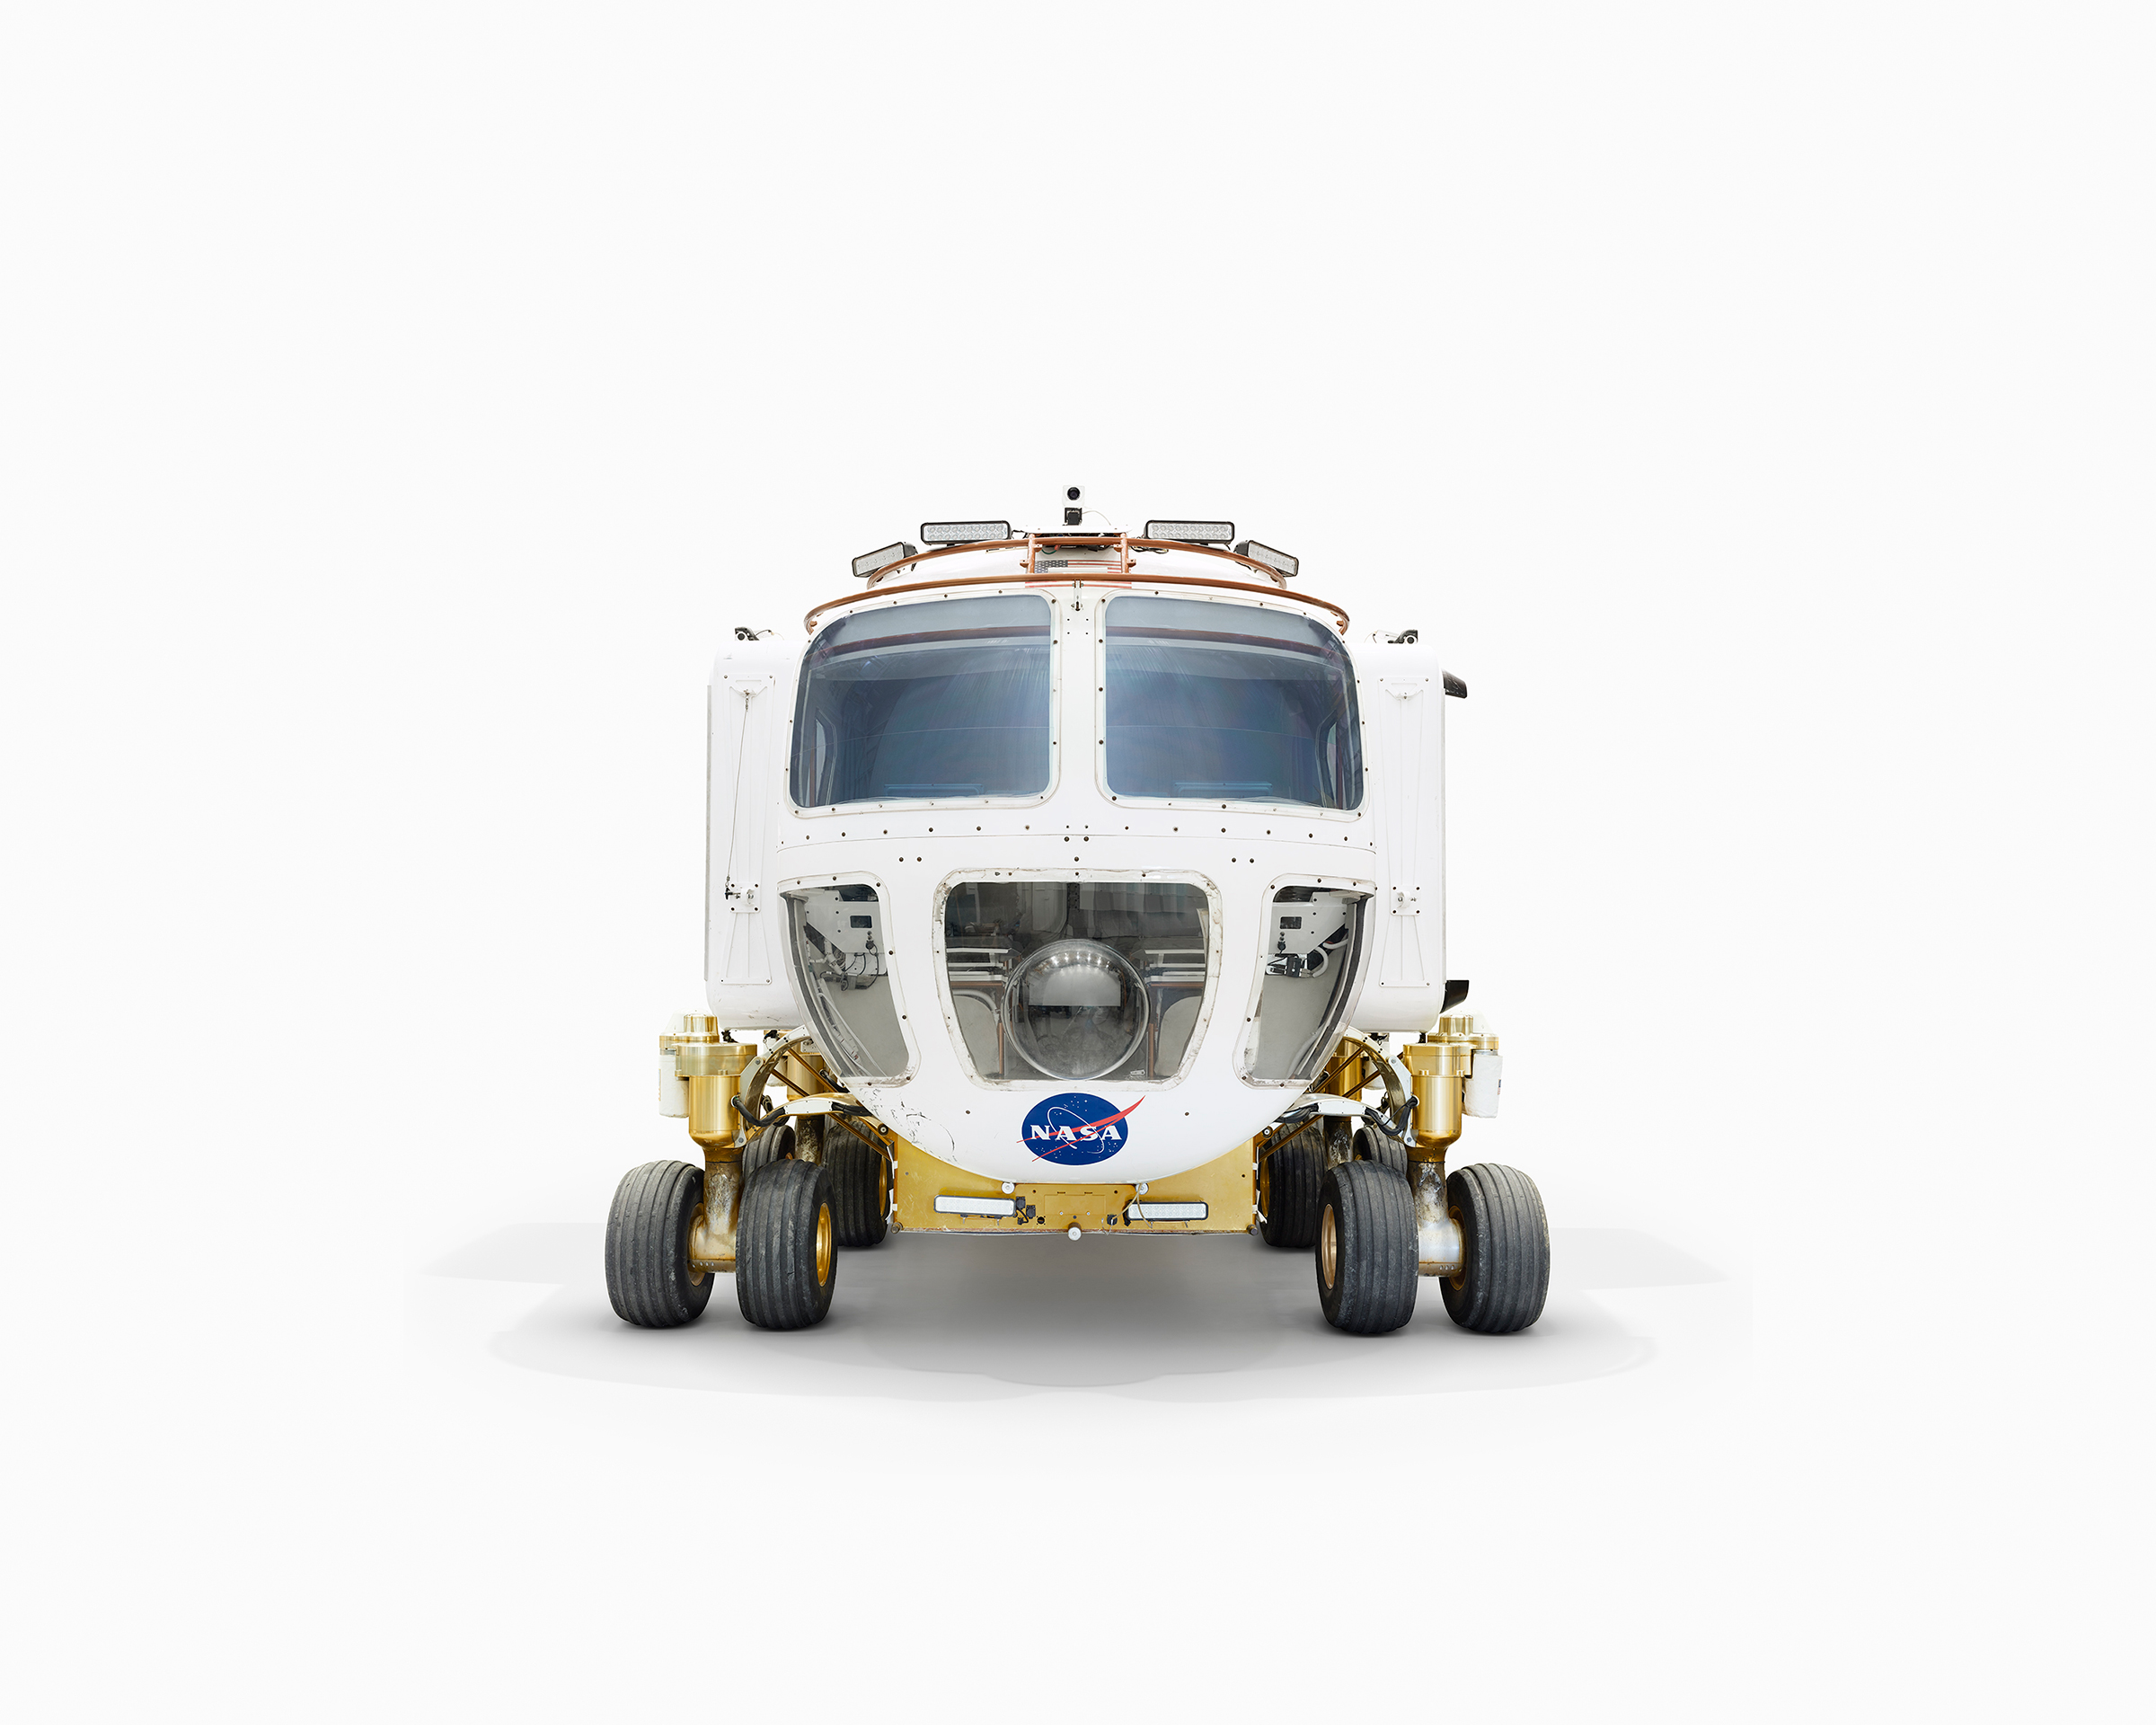 Прототип лунного транспортного вездехода &mdash; это небольшой 12-колесный транспортер. Работает от аккумуляторов, заряда которых хватает на две недели работы, и может развивать скорость до 19 км/ч.
